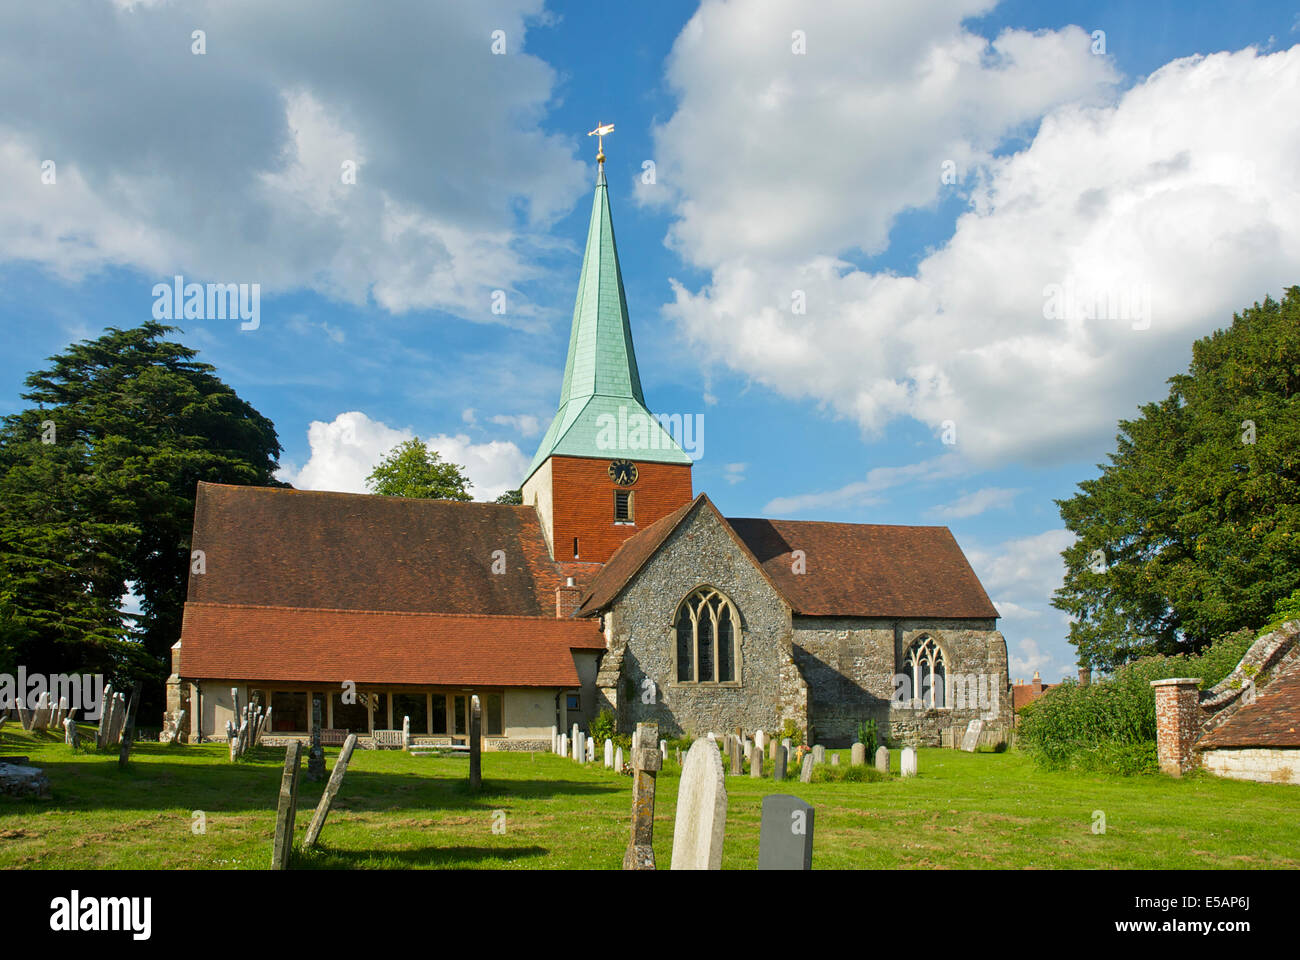 L'église de St Mary et St Gabriel, dans le village de South Harting, West Sussex, Angleterre, Royaume-Uni Banque D'Images